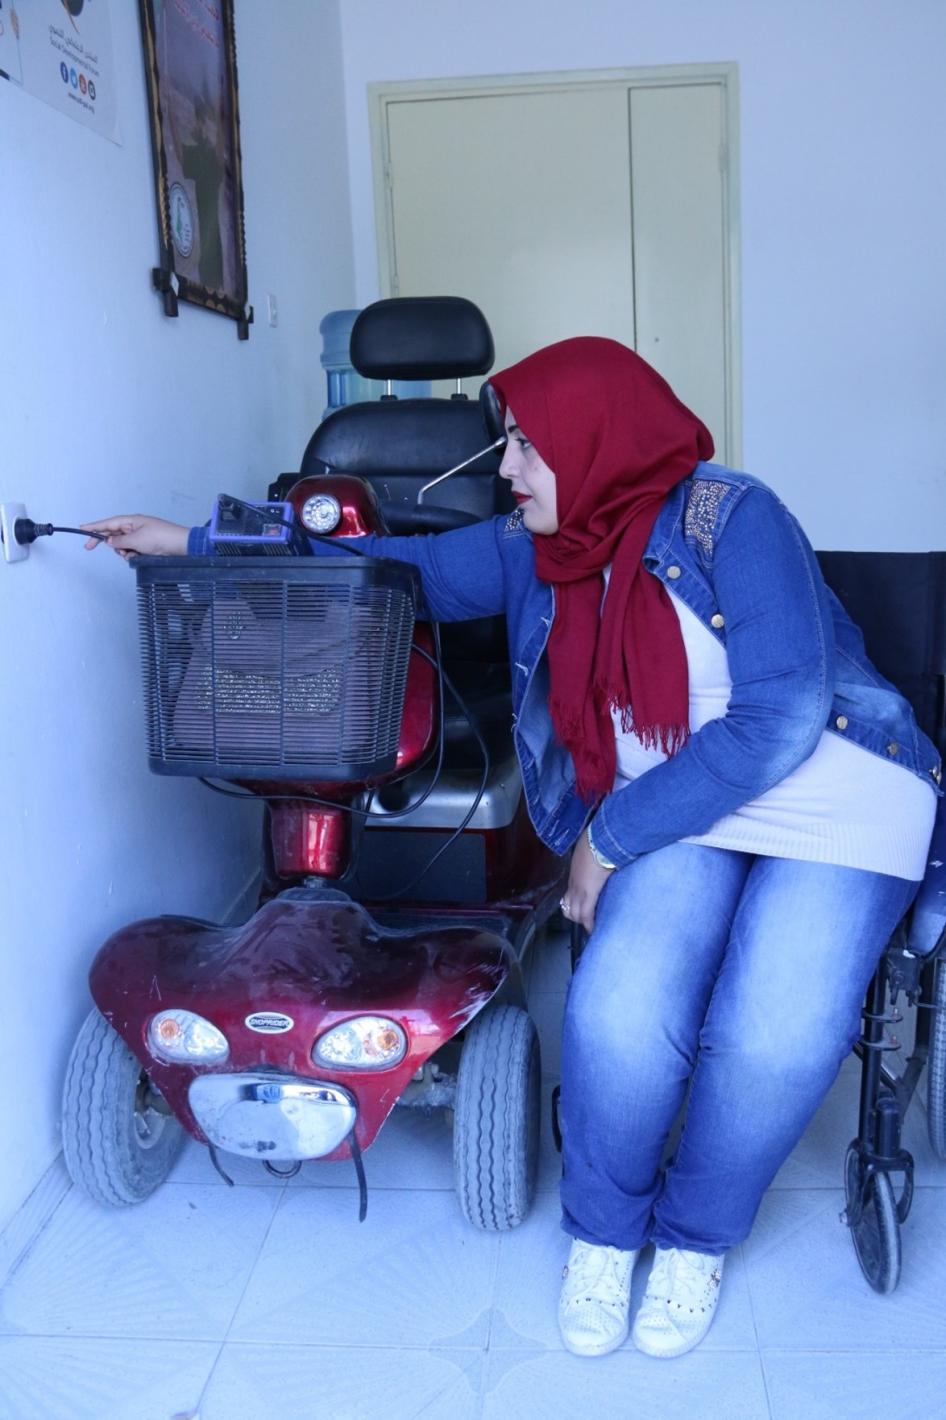 دعاء قشلان، امرأة عمرها 30 عاما لديها إعاقة حركية، تشحن السكوتر  في غزة. قالت لـ هيومن رايتس ووتش: "انقطاع الكهرباء هو أكبر مخاوفي. أحتاج إلى شحن السكوتر، وإلّا أُضطرّ إلى ملازمة المنزل، حيث أشعر أنّ الحياة توقّفت".